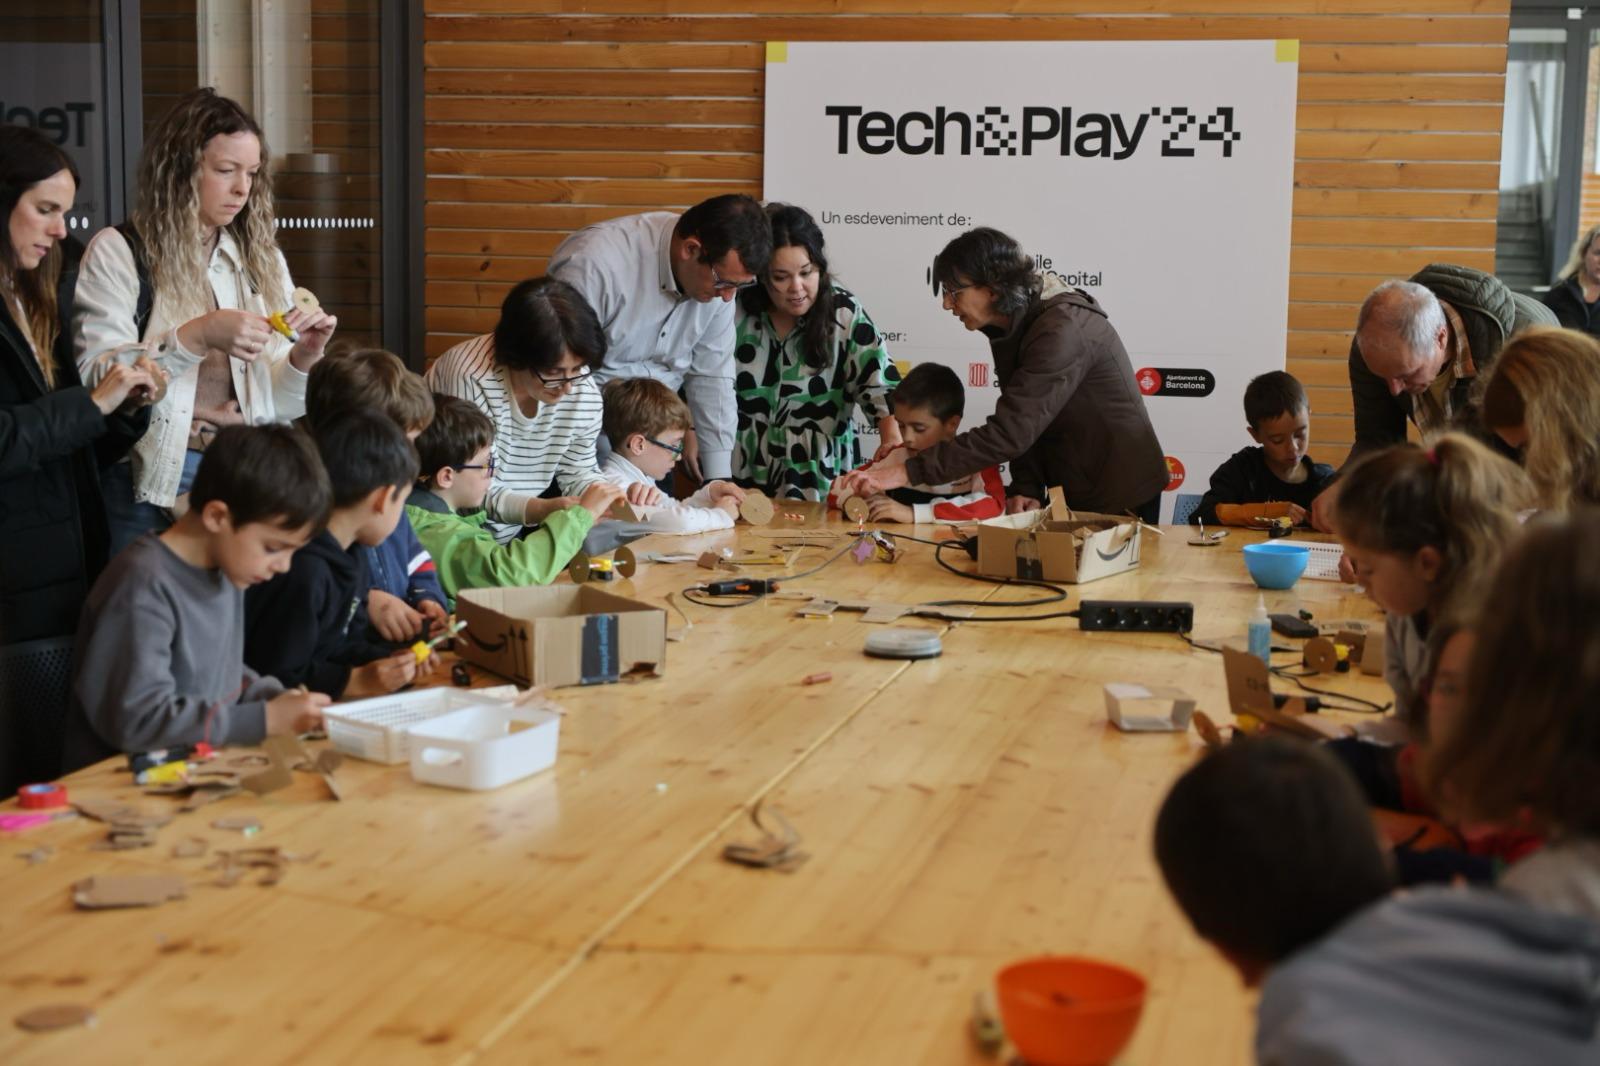 El festival Tech&Play culmina cuatro días de actividades con una jornada especial para acercar la tecnología a los niños